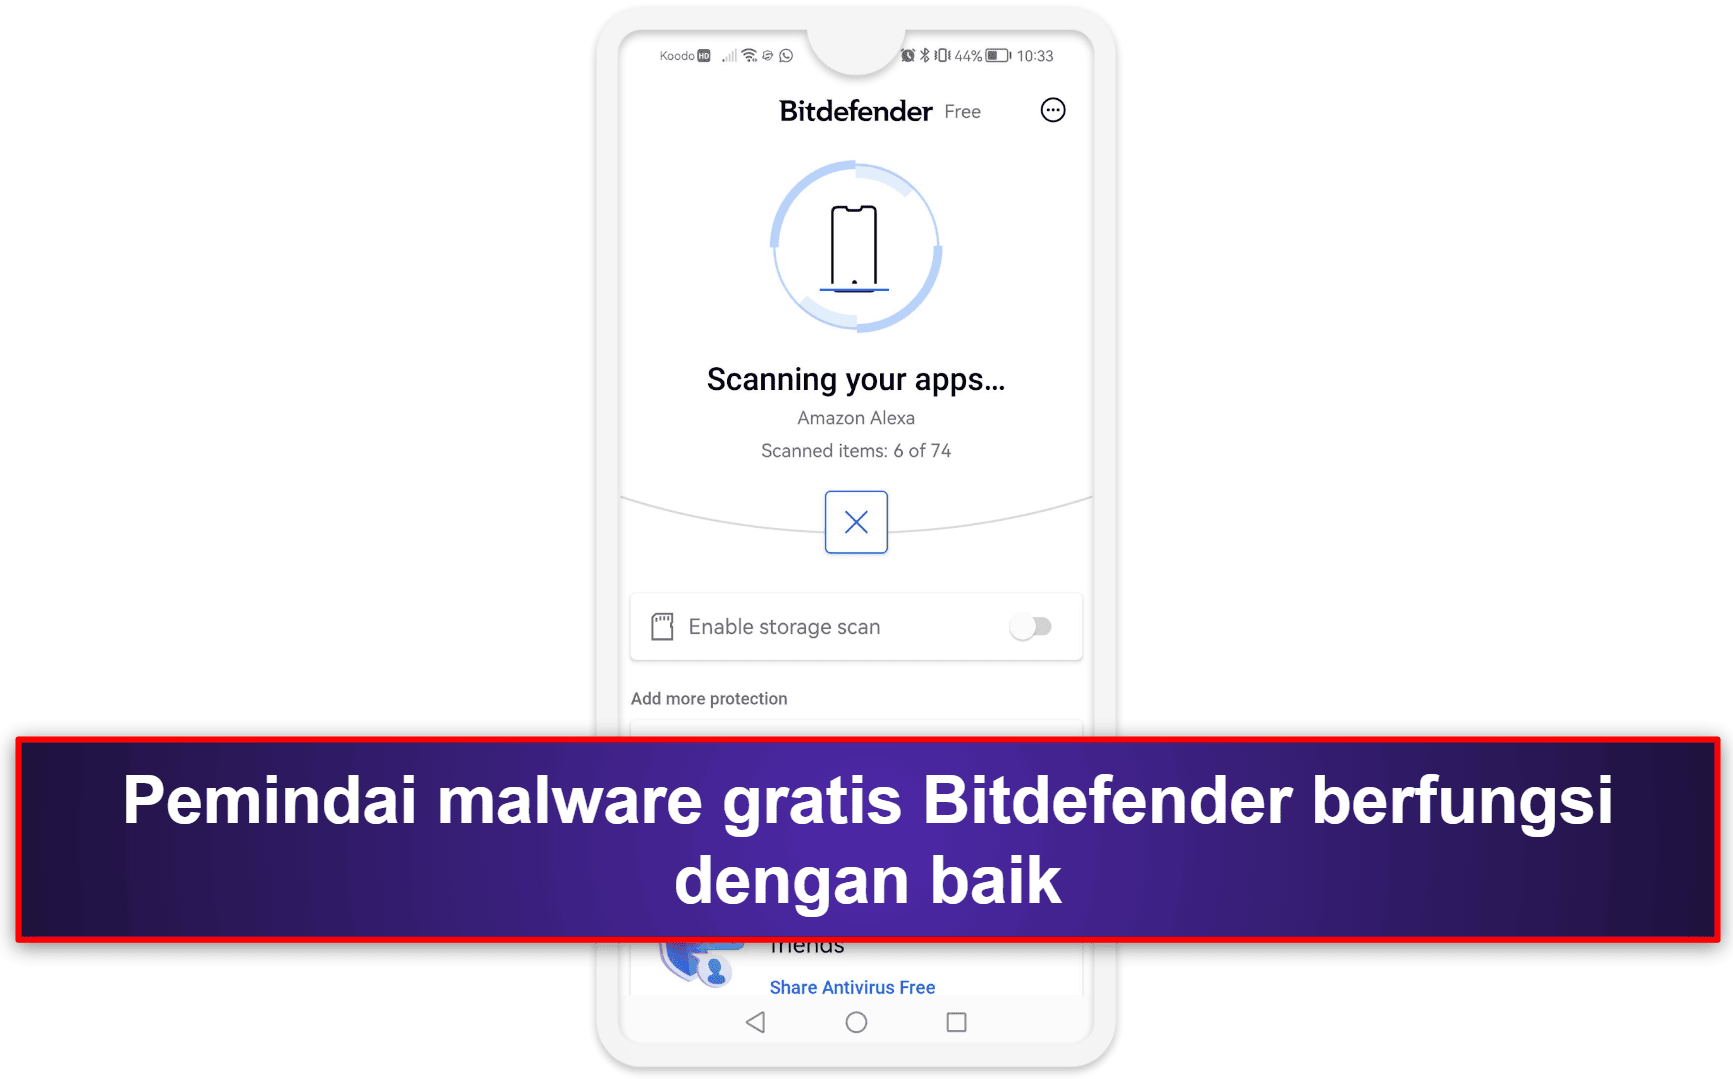 4. Bitdefender — Mudah Digunakan dengan Proteksi Malware Unggulan